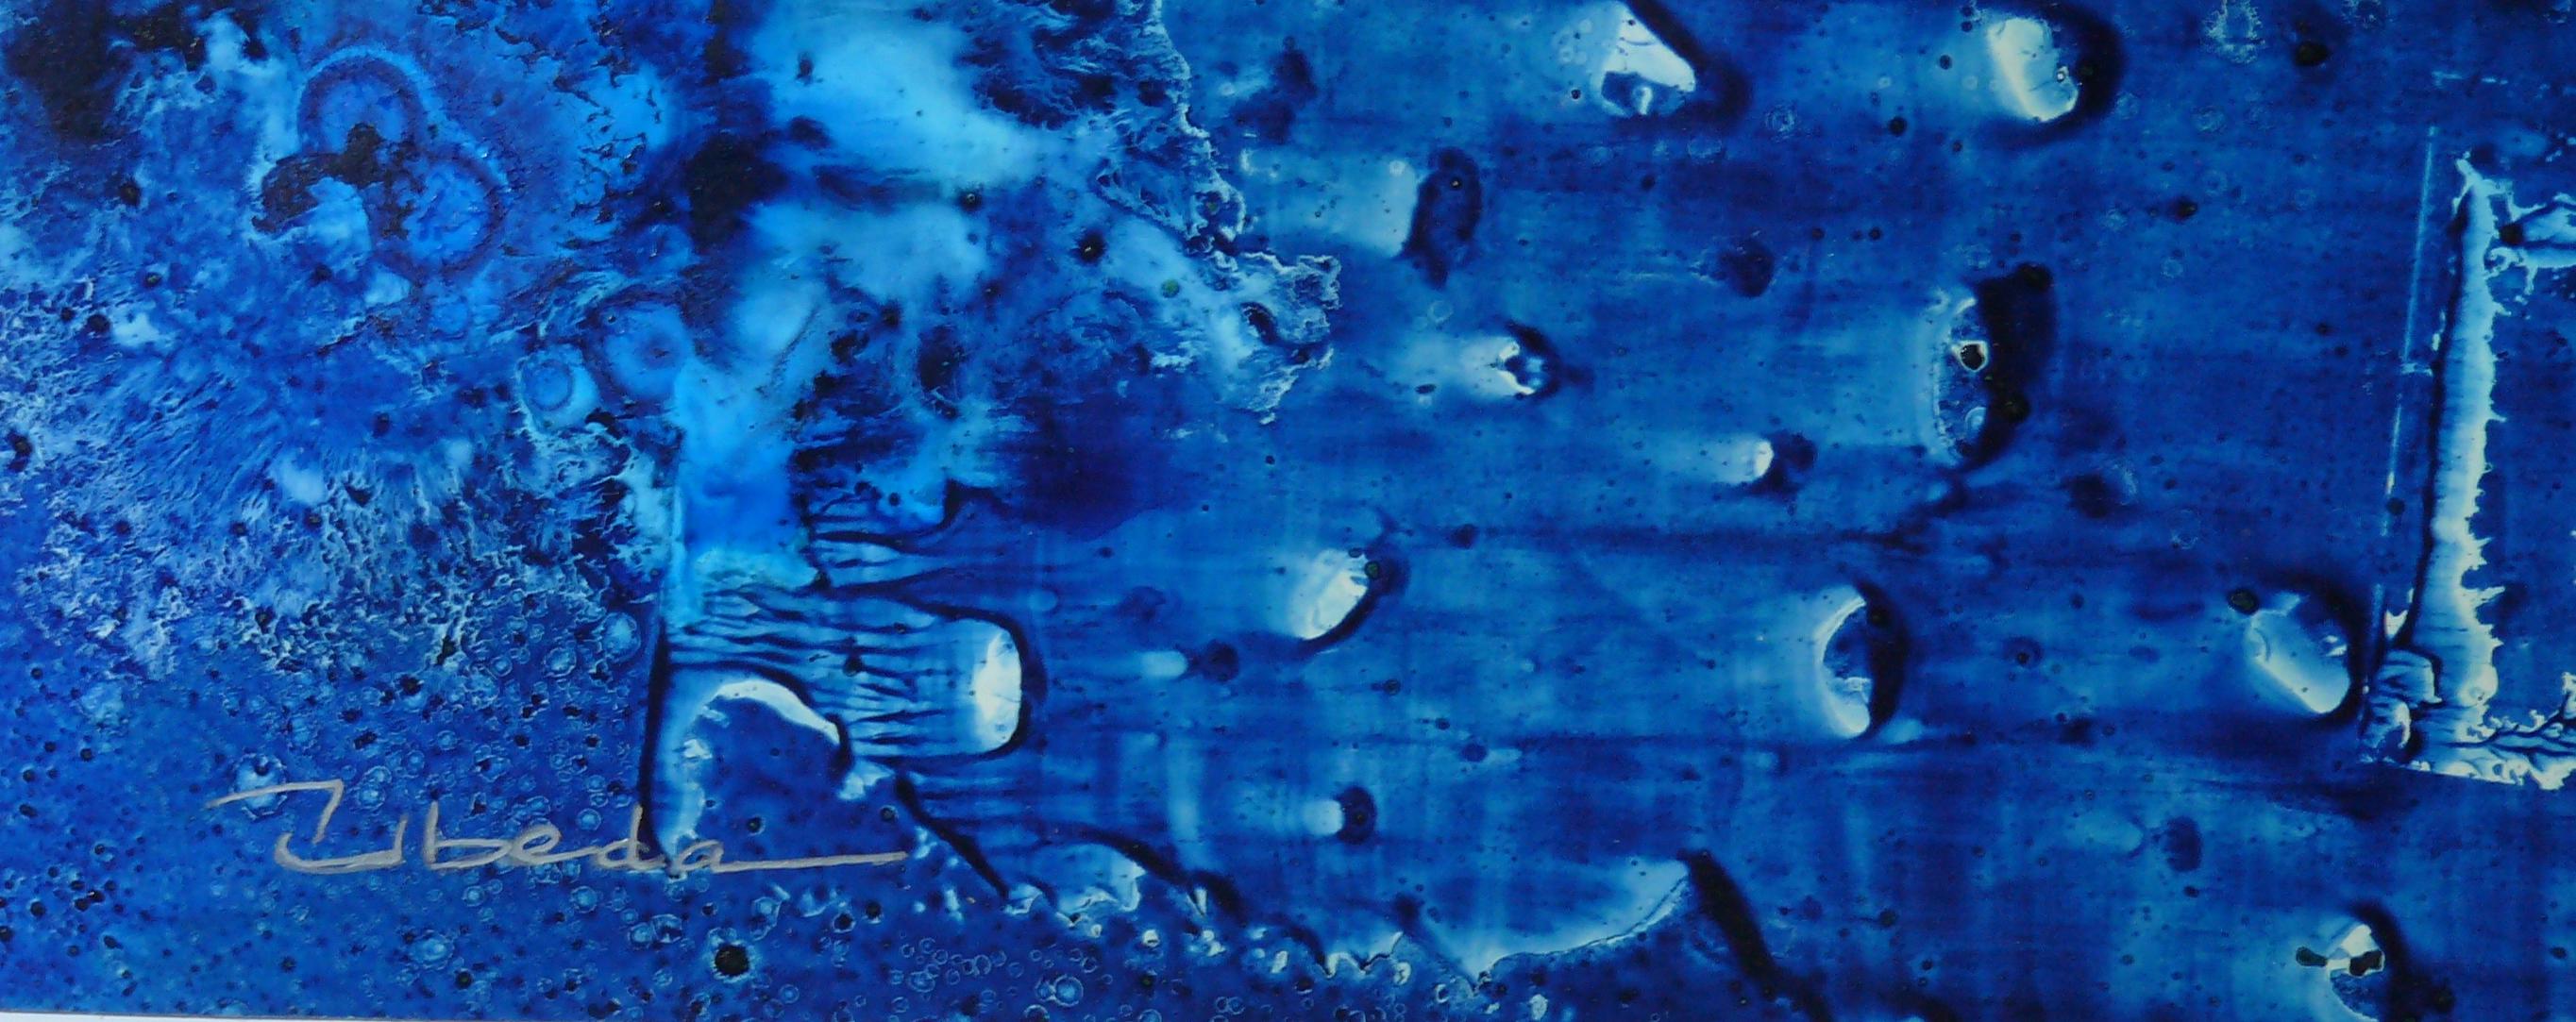 Under The Sea Series Nº 13. Úbeda. Oil fantasy underwater landscape. - Painting by Ángel Luis Úbeda